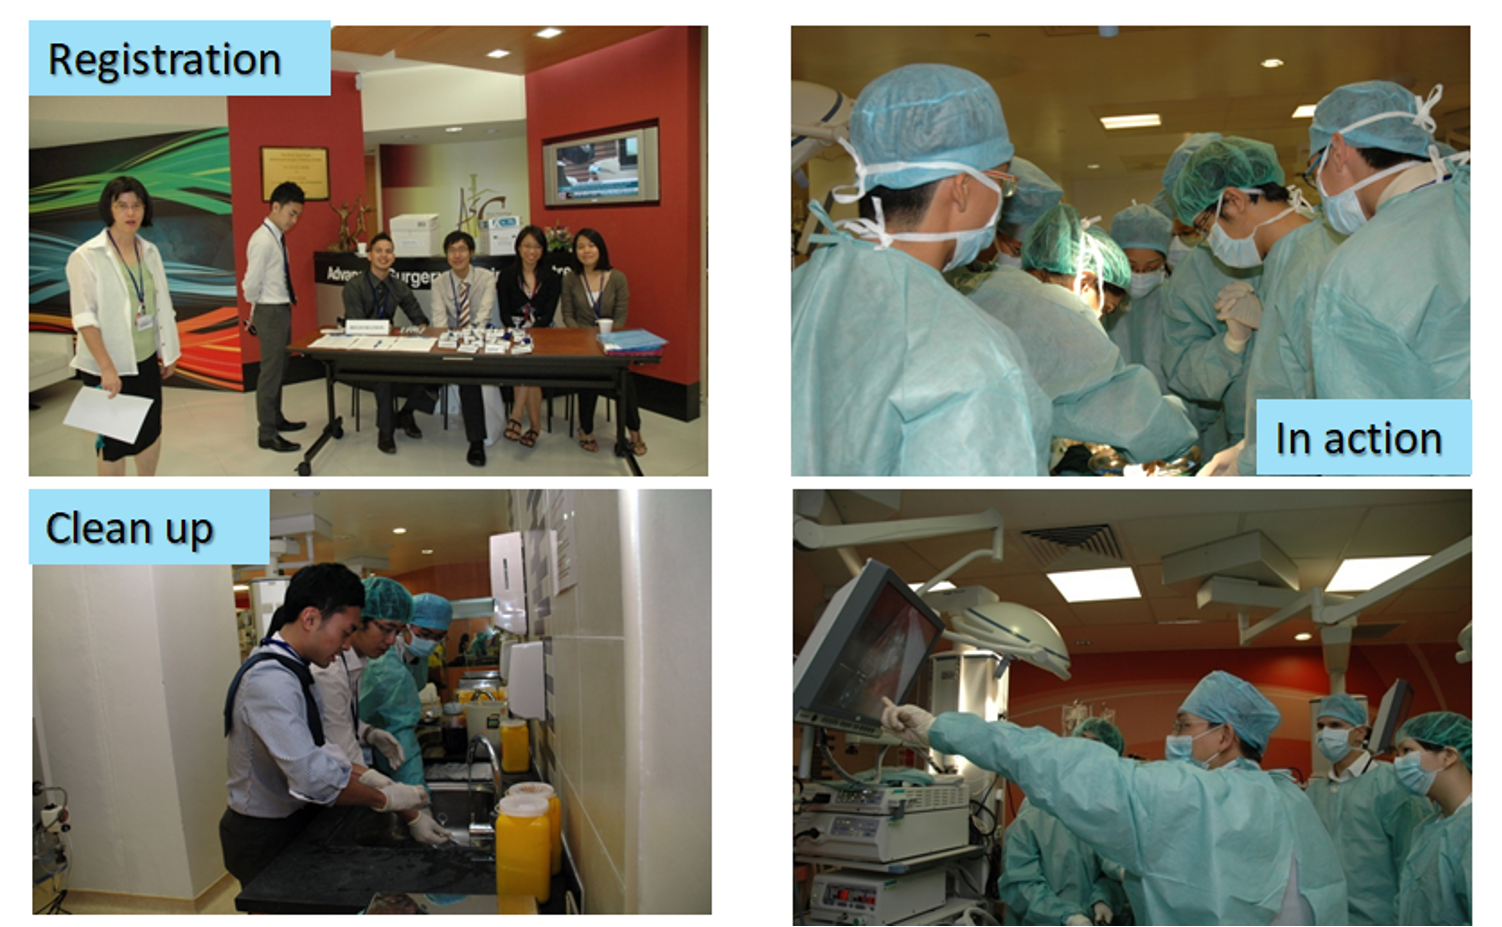 a laparoscopy workshop